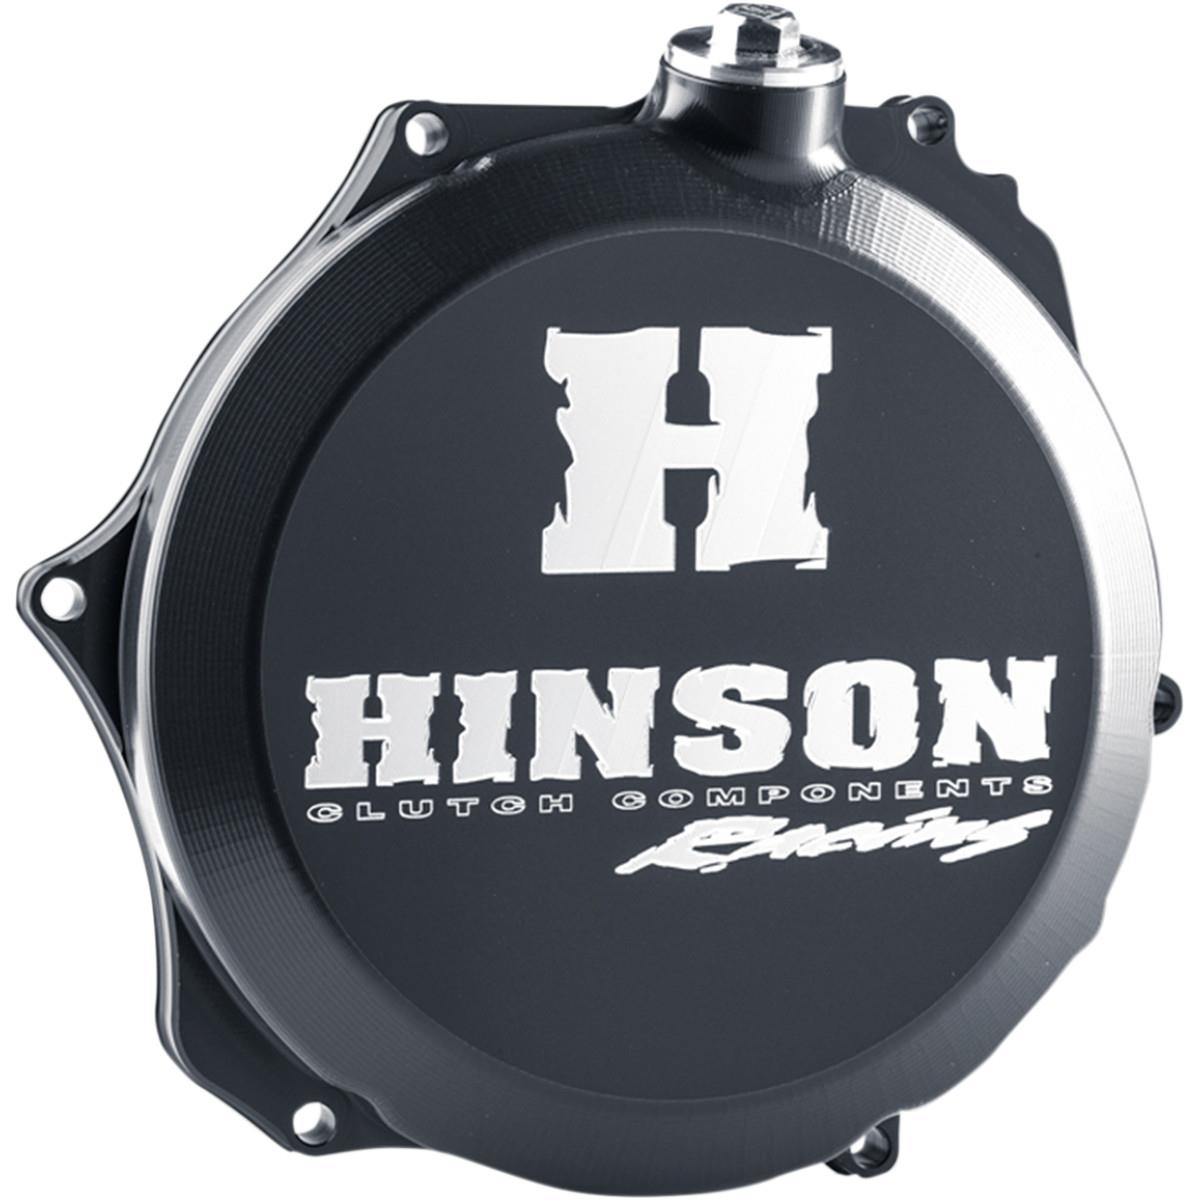 Hinson Kupplungsdeckel Billetproof KTM SX-F 250/350 16-, EXC 250/350 17-, Husqvarna FC 250/350 16-, FE 250/350 17-